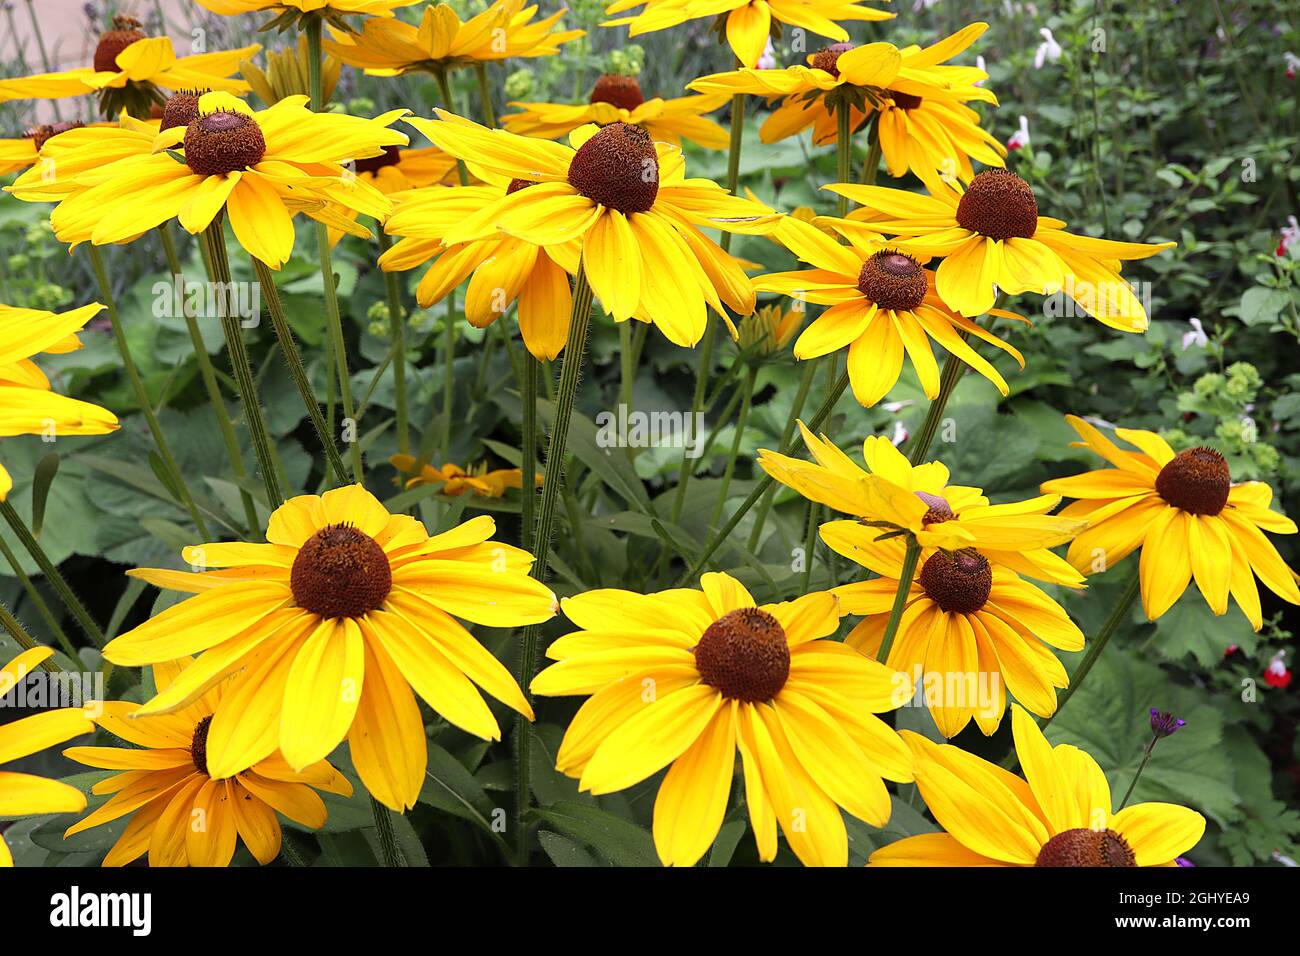 Rudbeckia hirta ‘Marmalade’ Susan dagli occhi neri – fiori gialli dorati con centro a forma di cono marrone, agosto, Inghilterra, Regno Unito Foto Stock